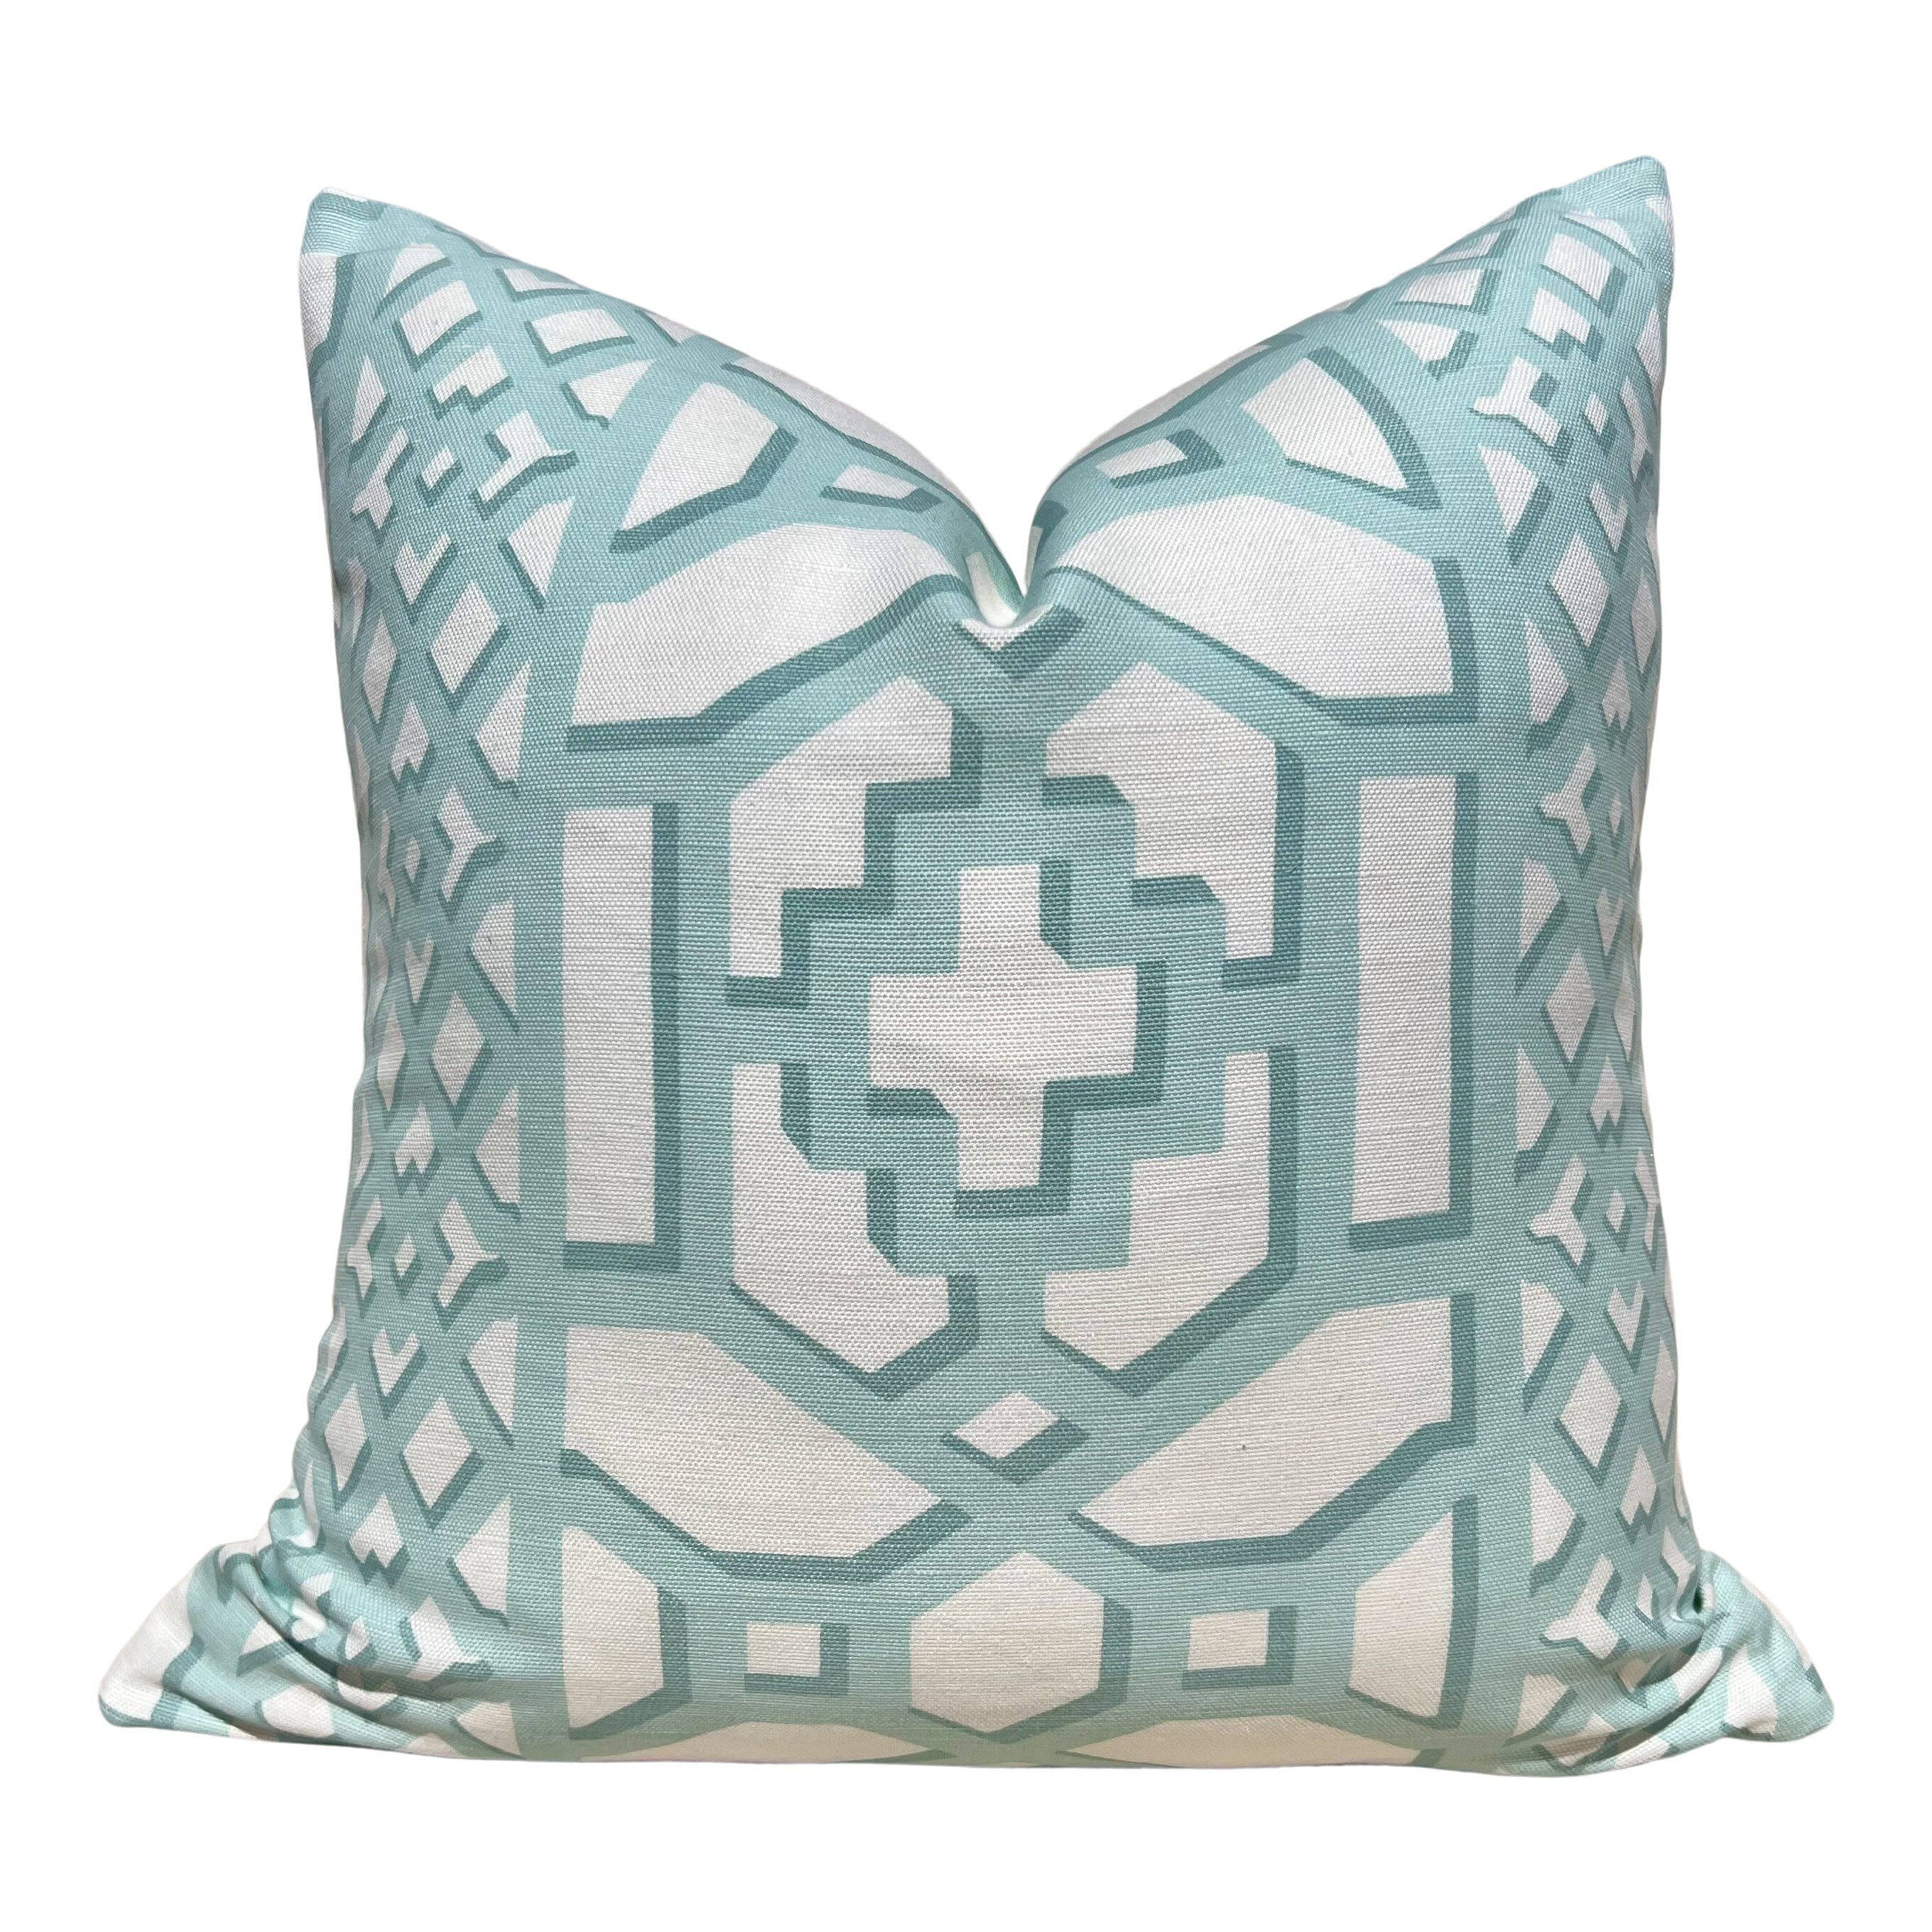 Schumacher Zanzibar Trellis Pillow in Mint. Designer Geometric Pillows, High End Aqua Pillow Covers, Accent Throw Pillows, Euro Sham Cover